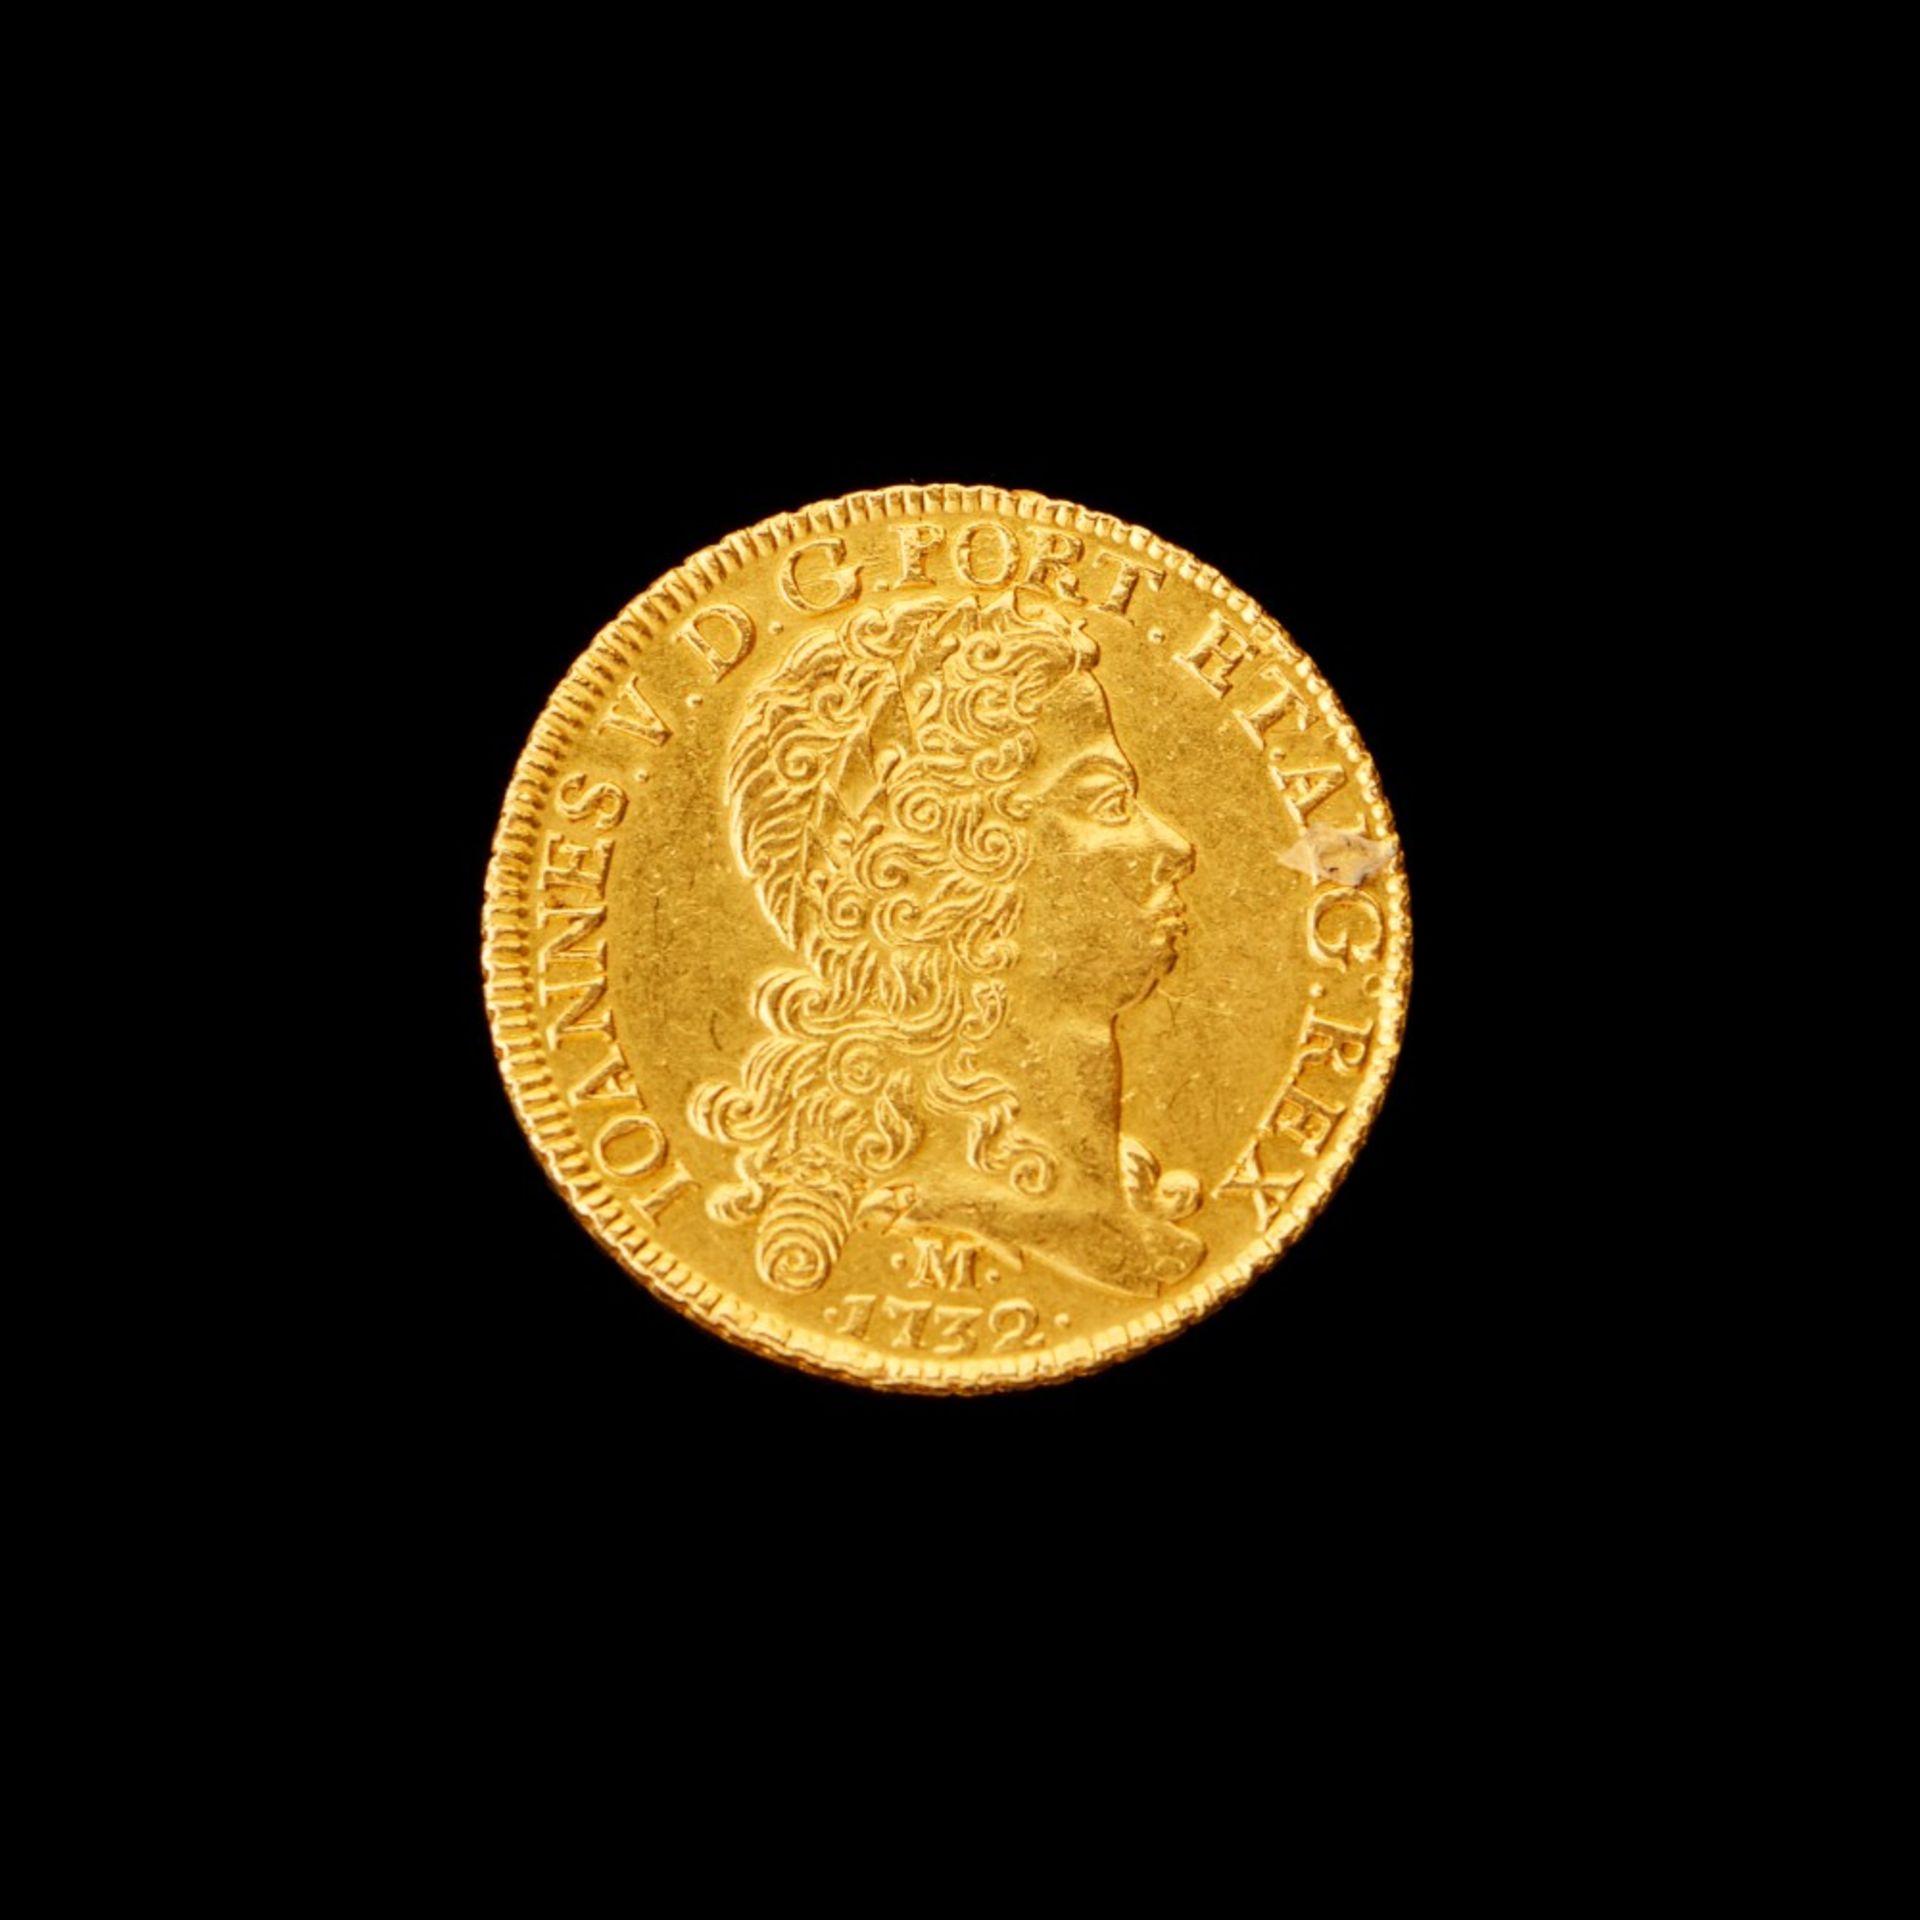 An 8 escudos coin